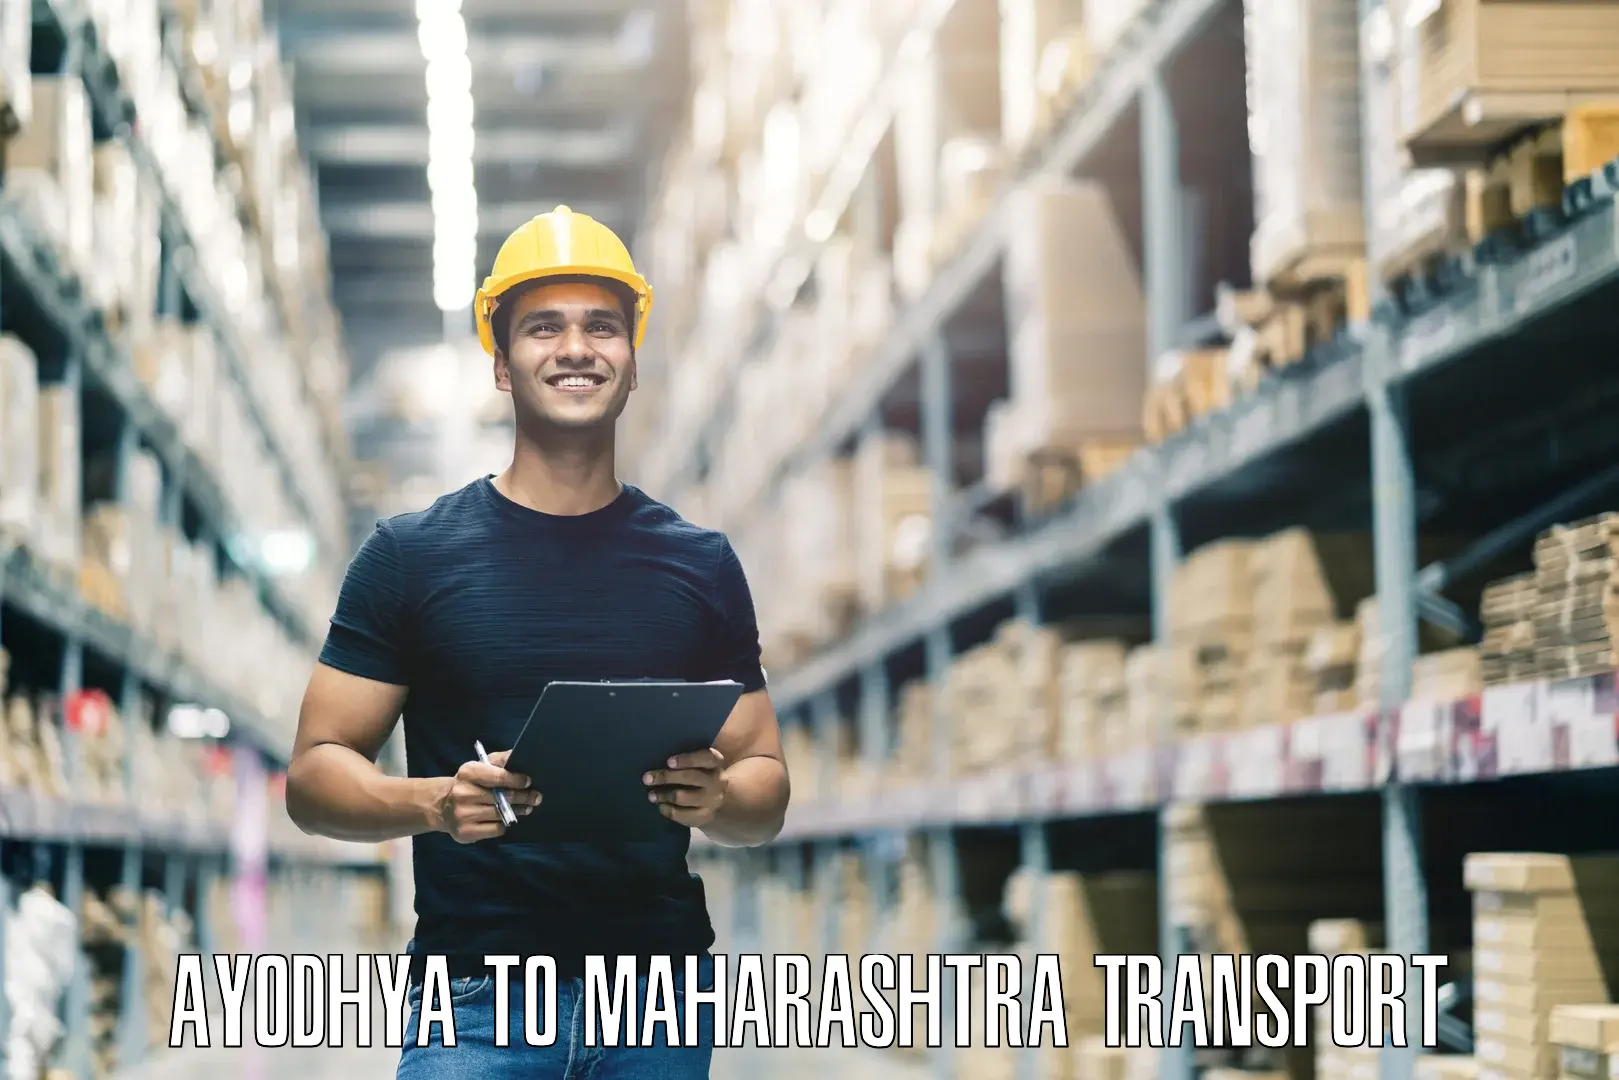 Lorry transport service Ayodhya to Maharashtra